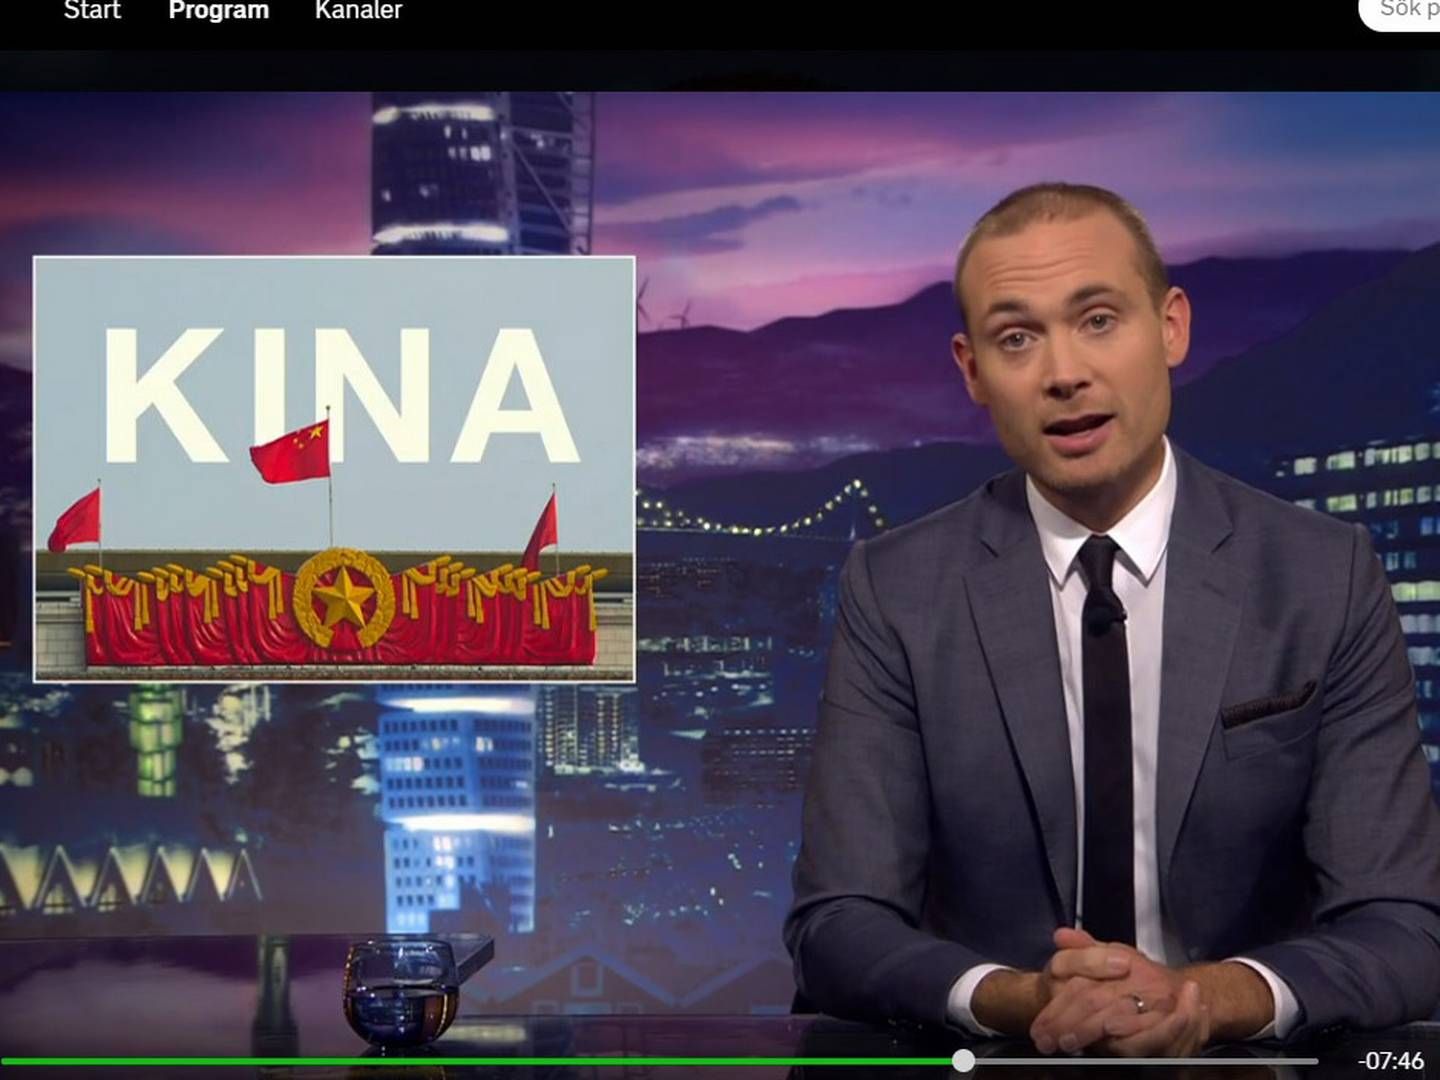 Foto: Screenshot fra satireprogrammet "Svenska Nyheter" på SVT